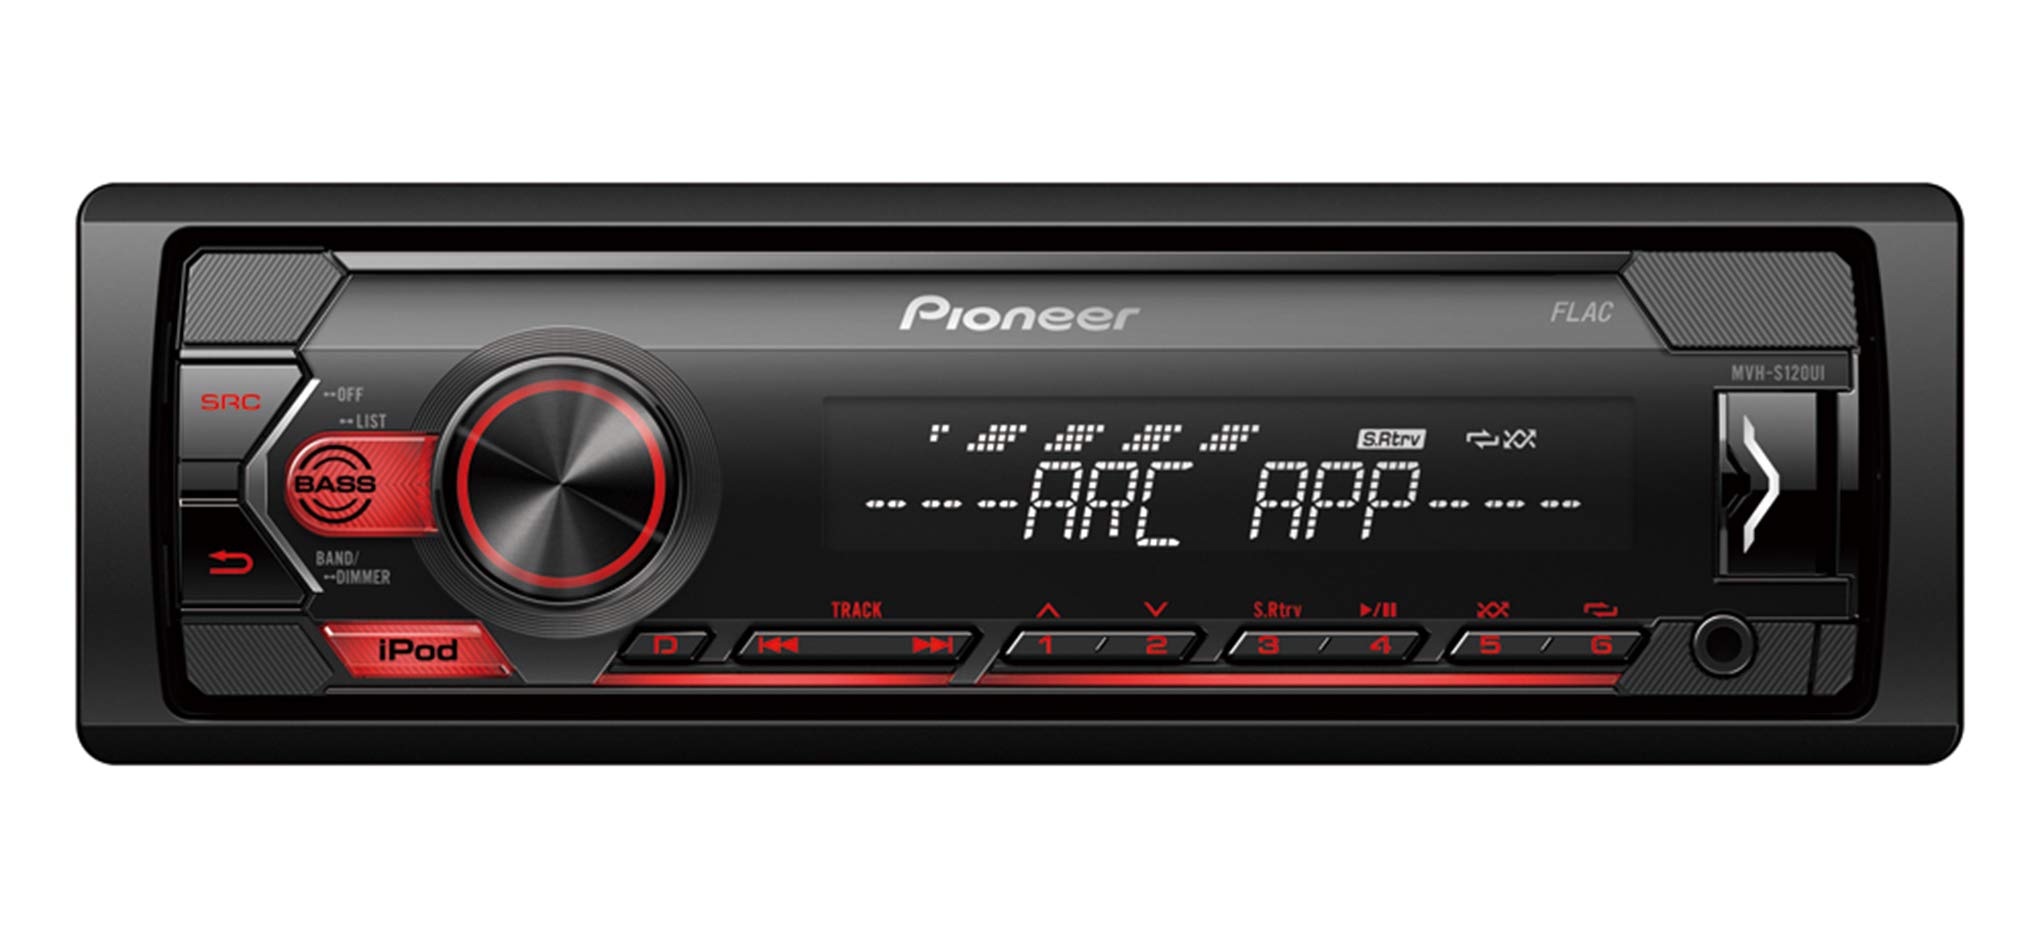 Pioneer MVH-S120UI 1-DIN Autoradio mit RDS, rot, halbe Einbautiefe, USB für MP3, WMA, WAV, FLAC, AUX-Eingang, Android-Unterstützung, iPhone-Steuerung, ARC App kompatibel